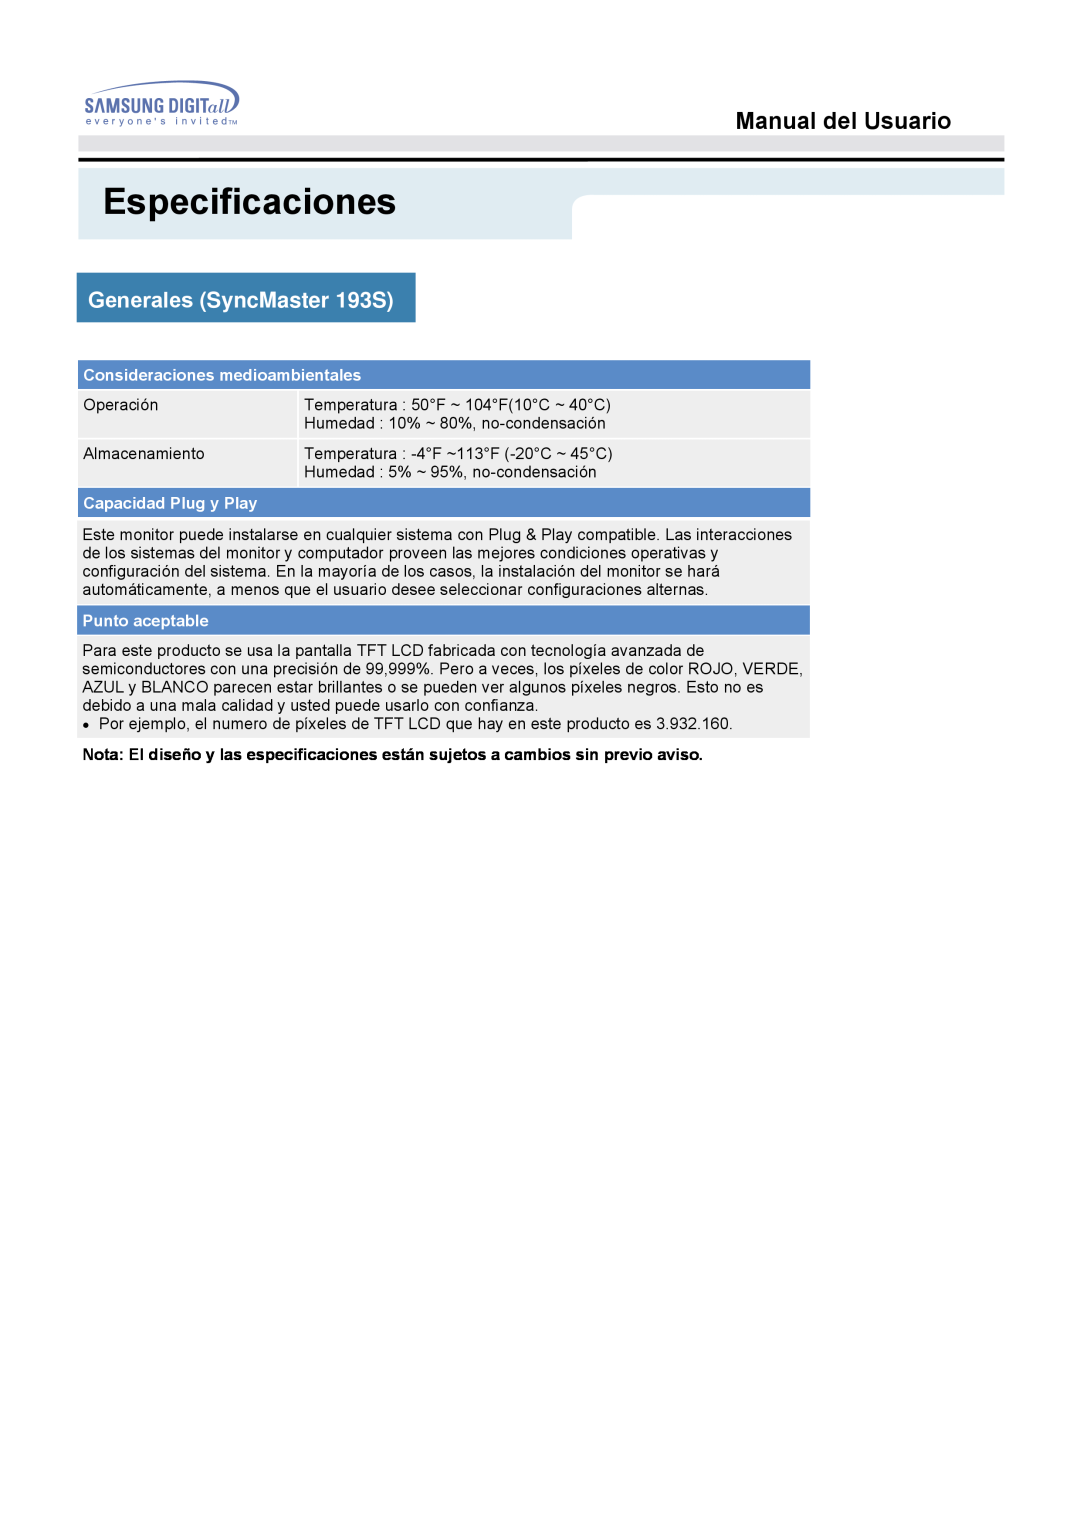 Samsung 153S manual Especificaciones, Manual del Usuario, Generales SyncMaster 193S, Operación 